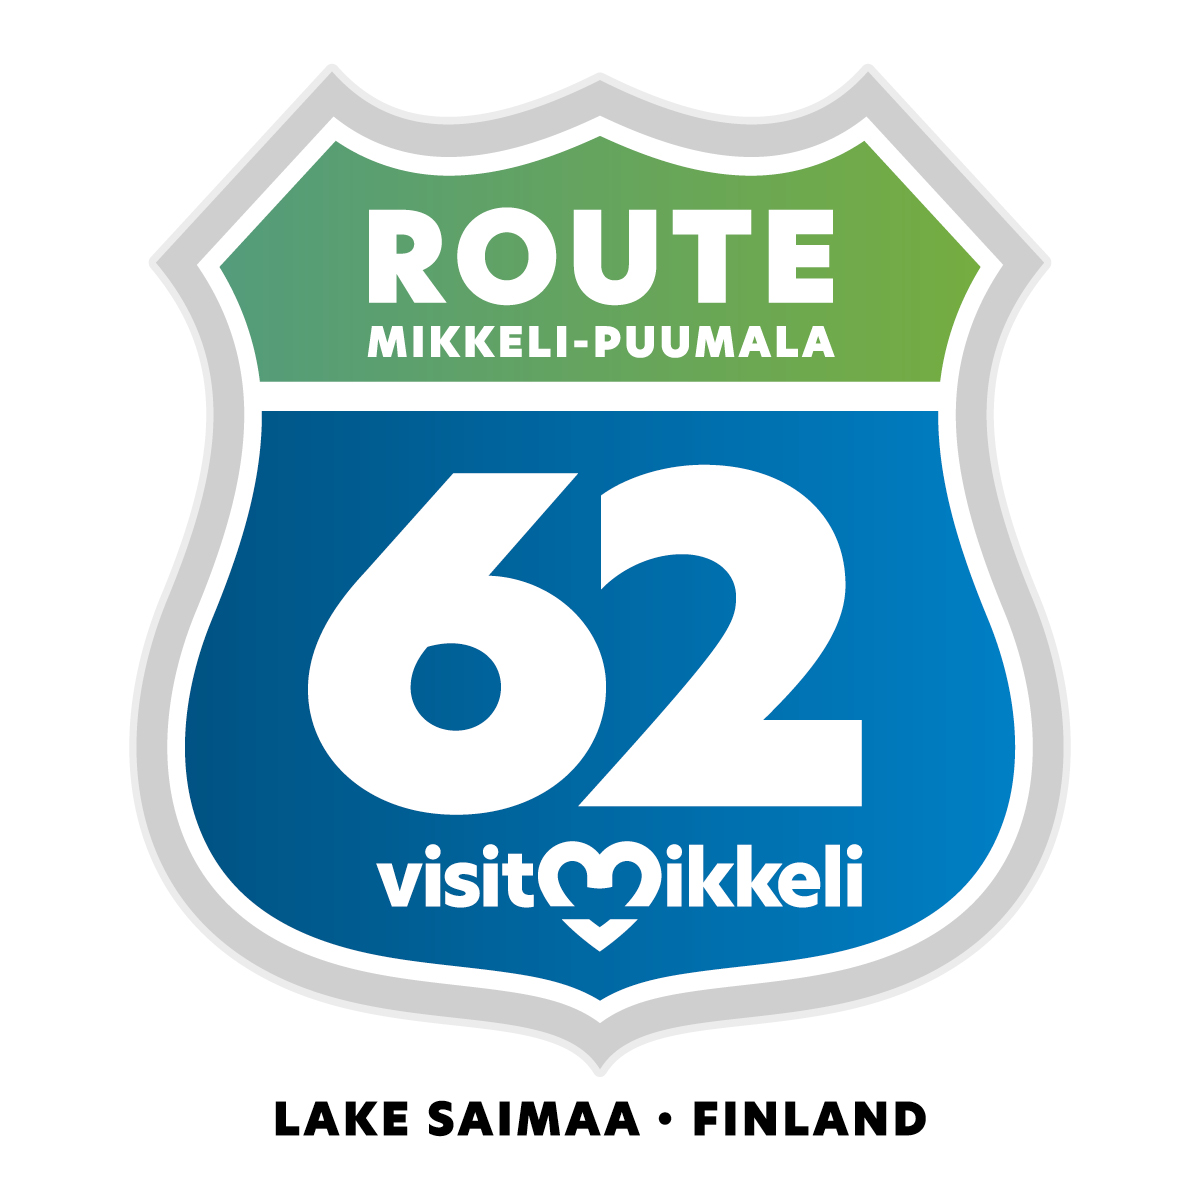 route 62 logo.